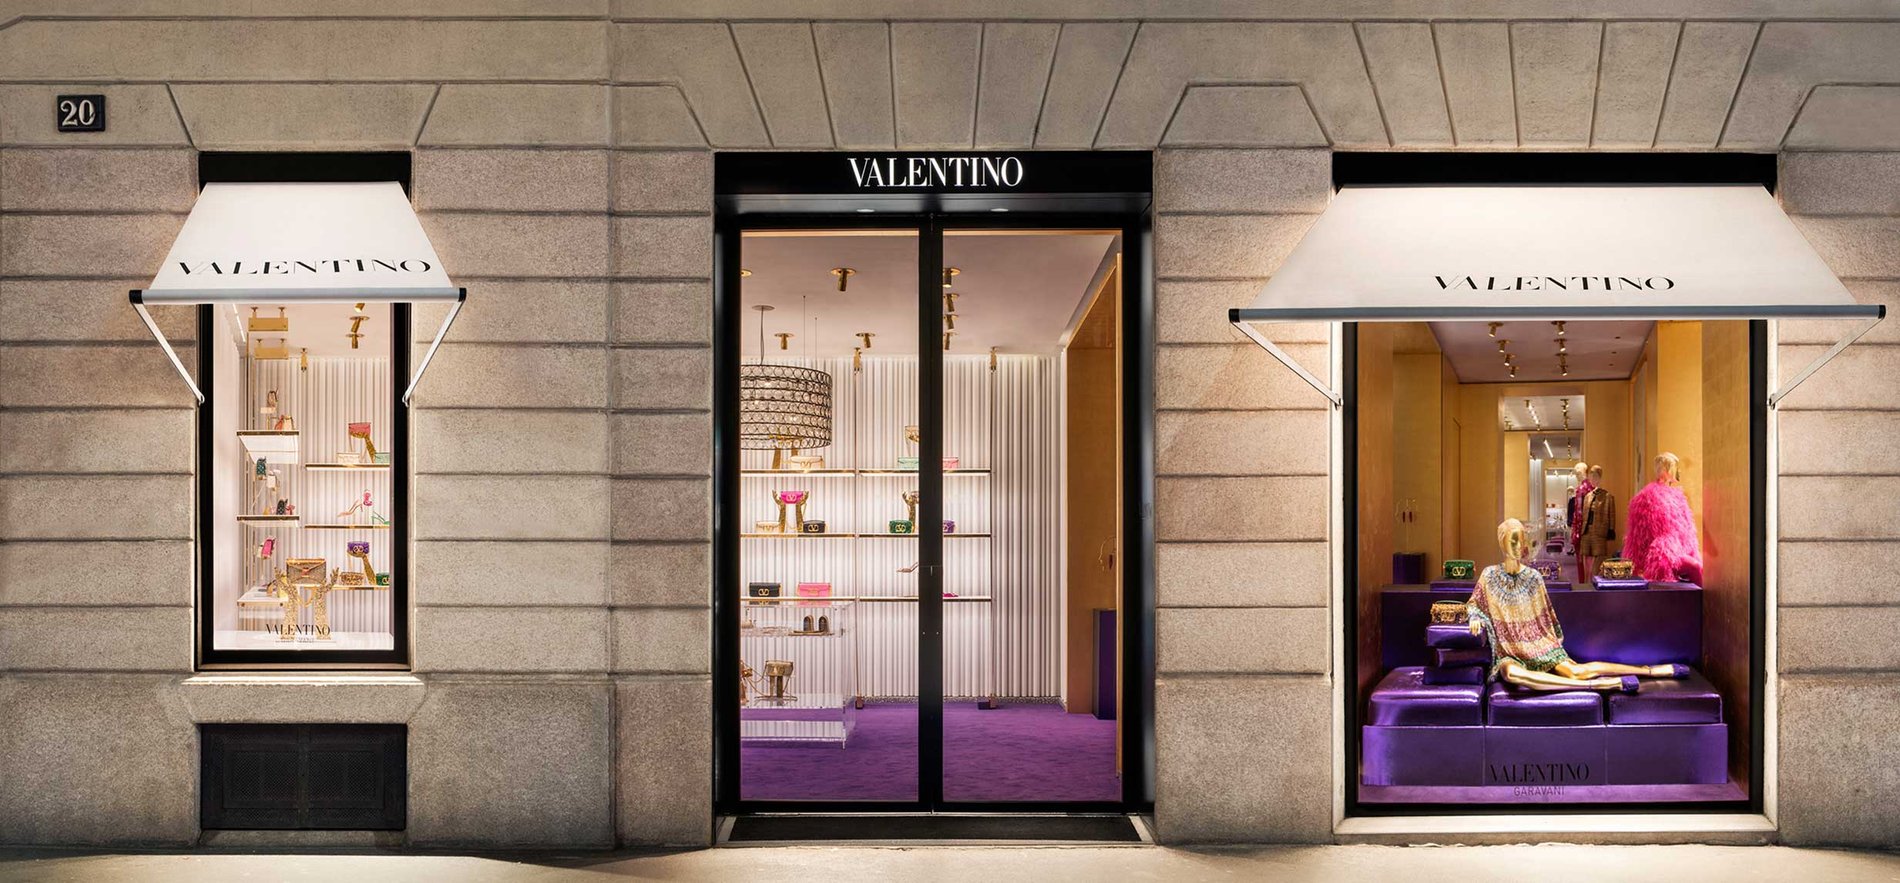 Valentino Madrid El Corte Ingles: bolsos, zapatos y complementos para mujer Madrid